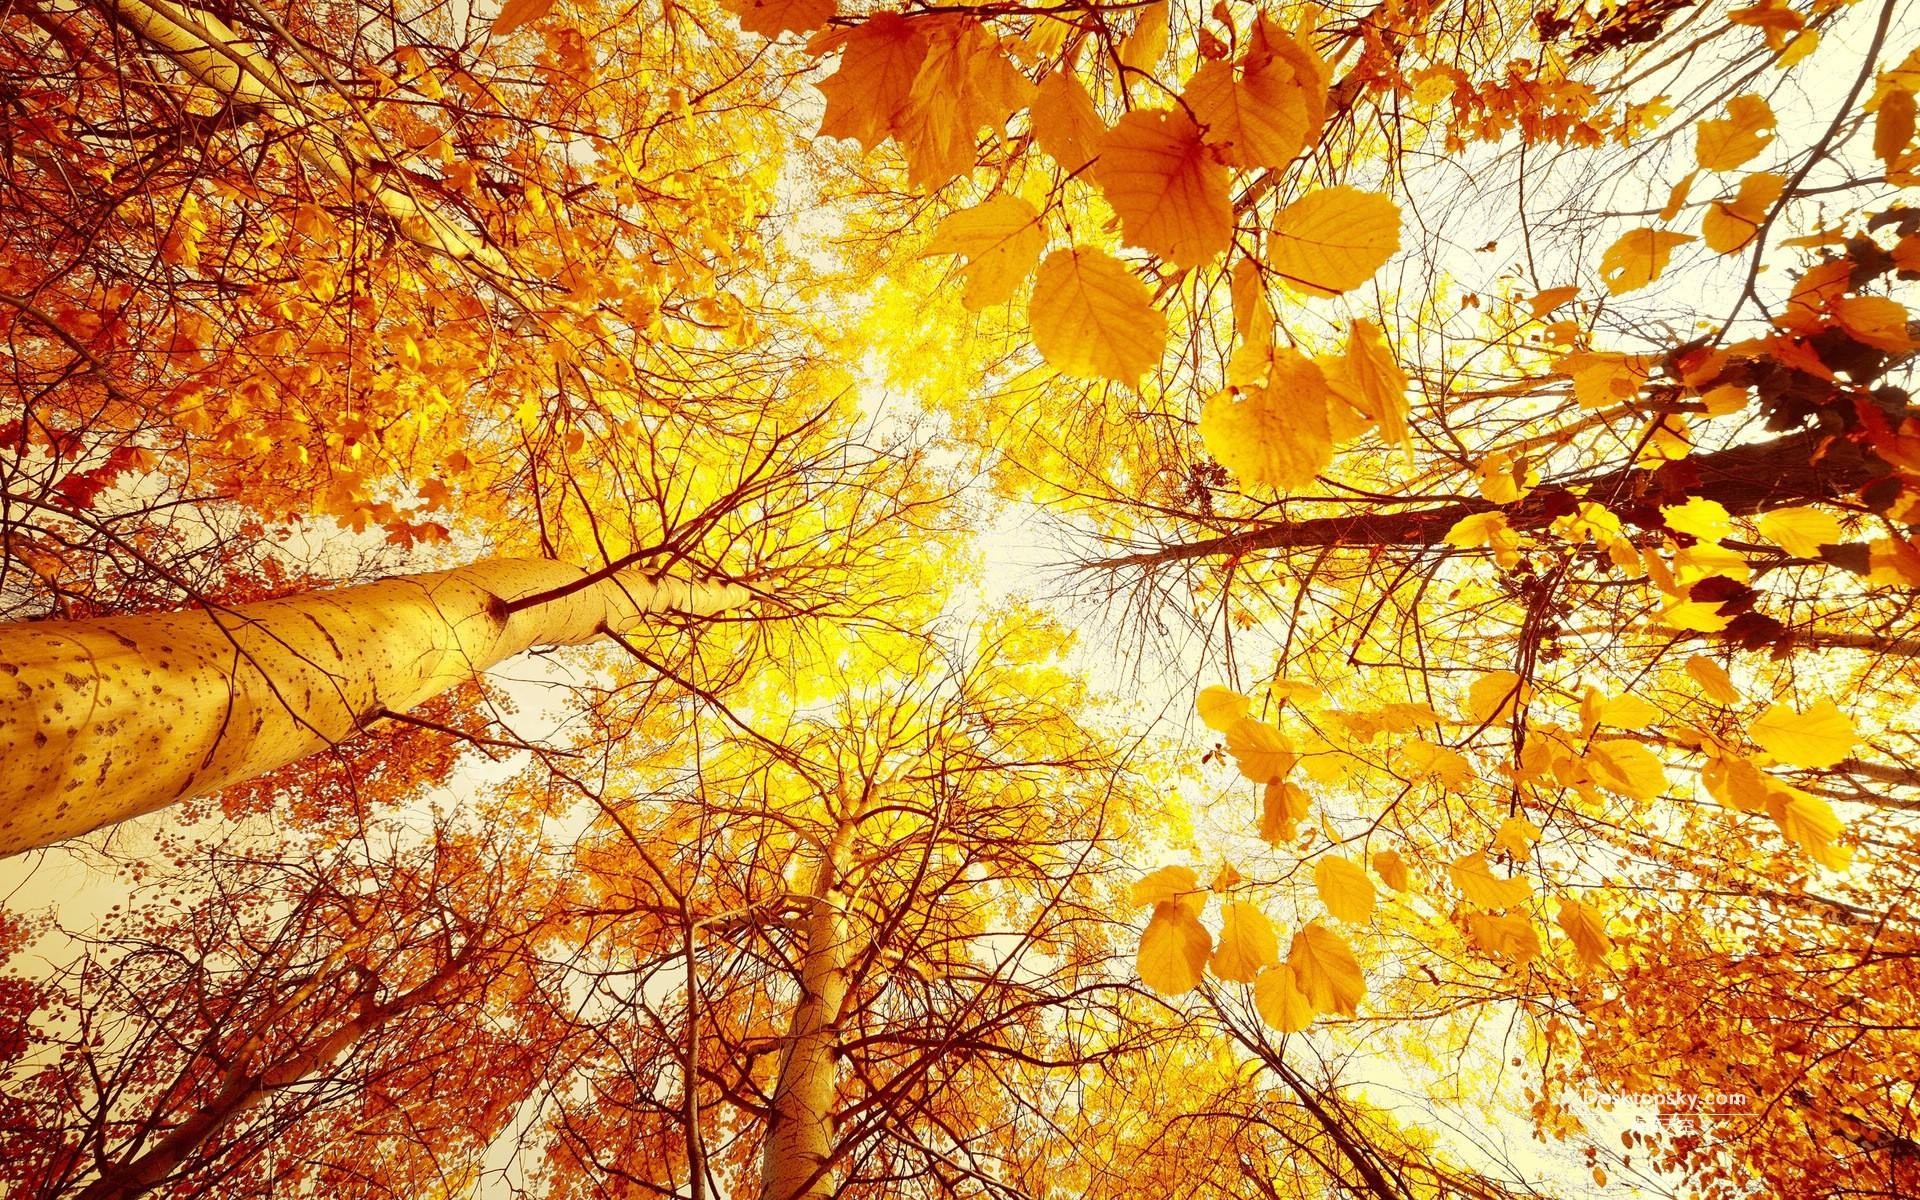 先天下在这个凉爽秋日为您和家人带去" 秋的问候"!